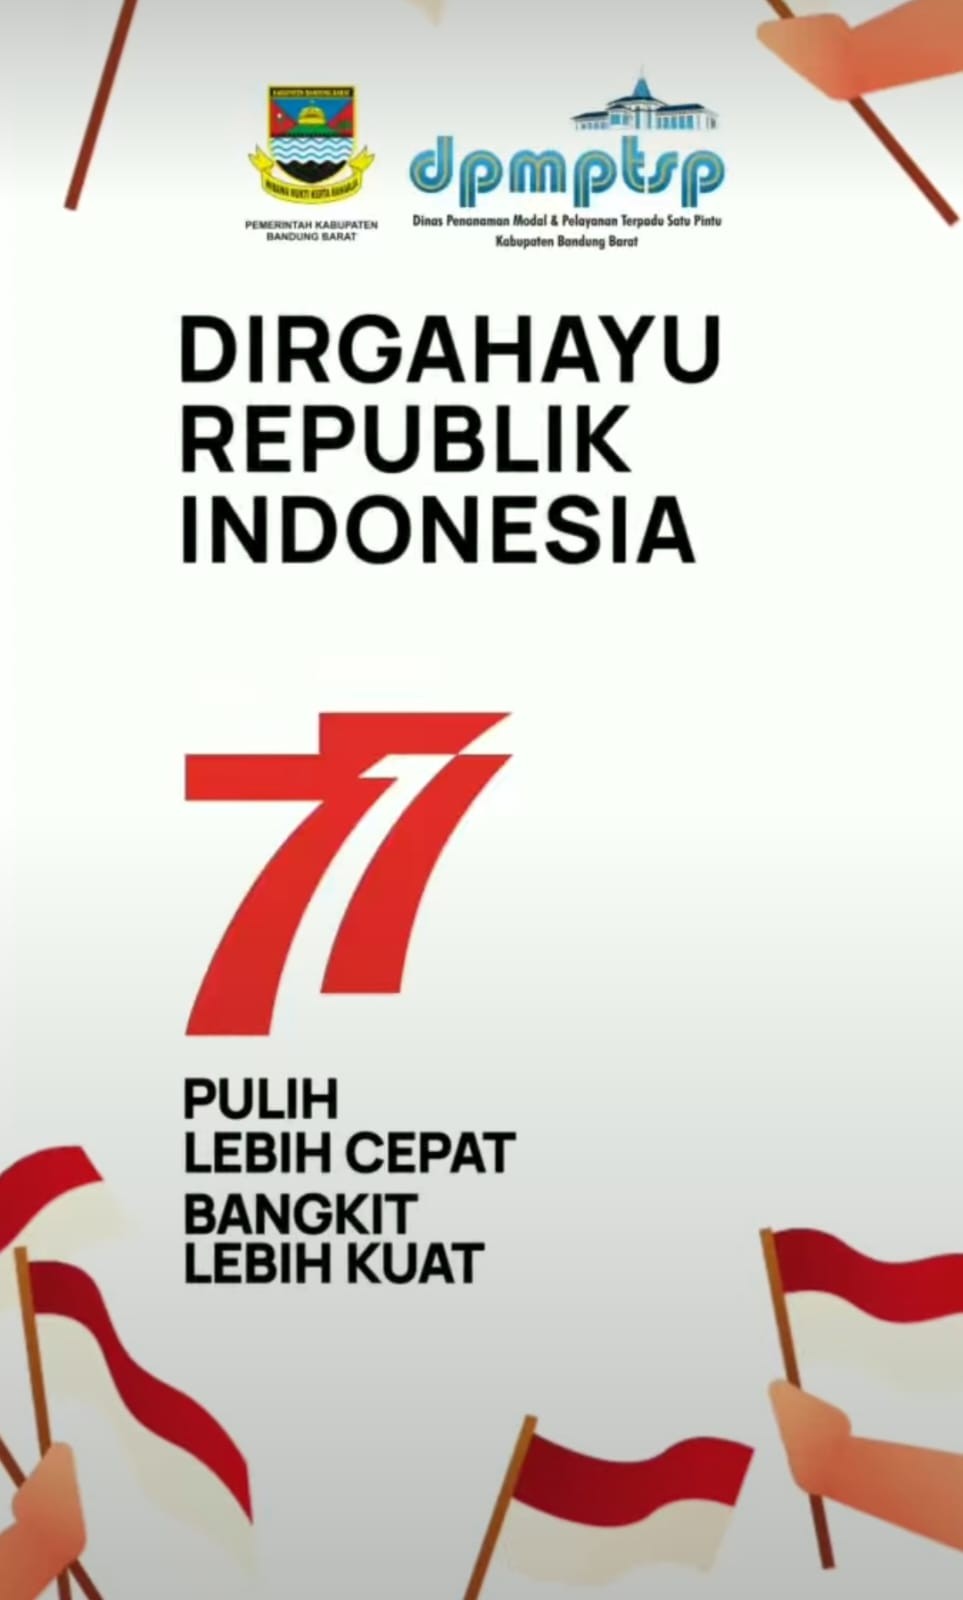 >DIRGAHAYU REPUBLIK INDONESIA KE 77